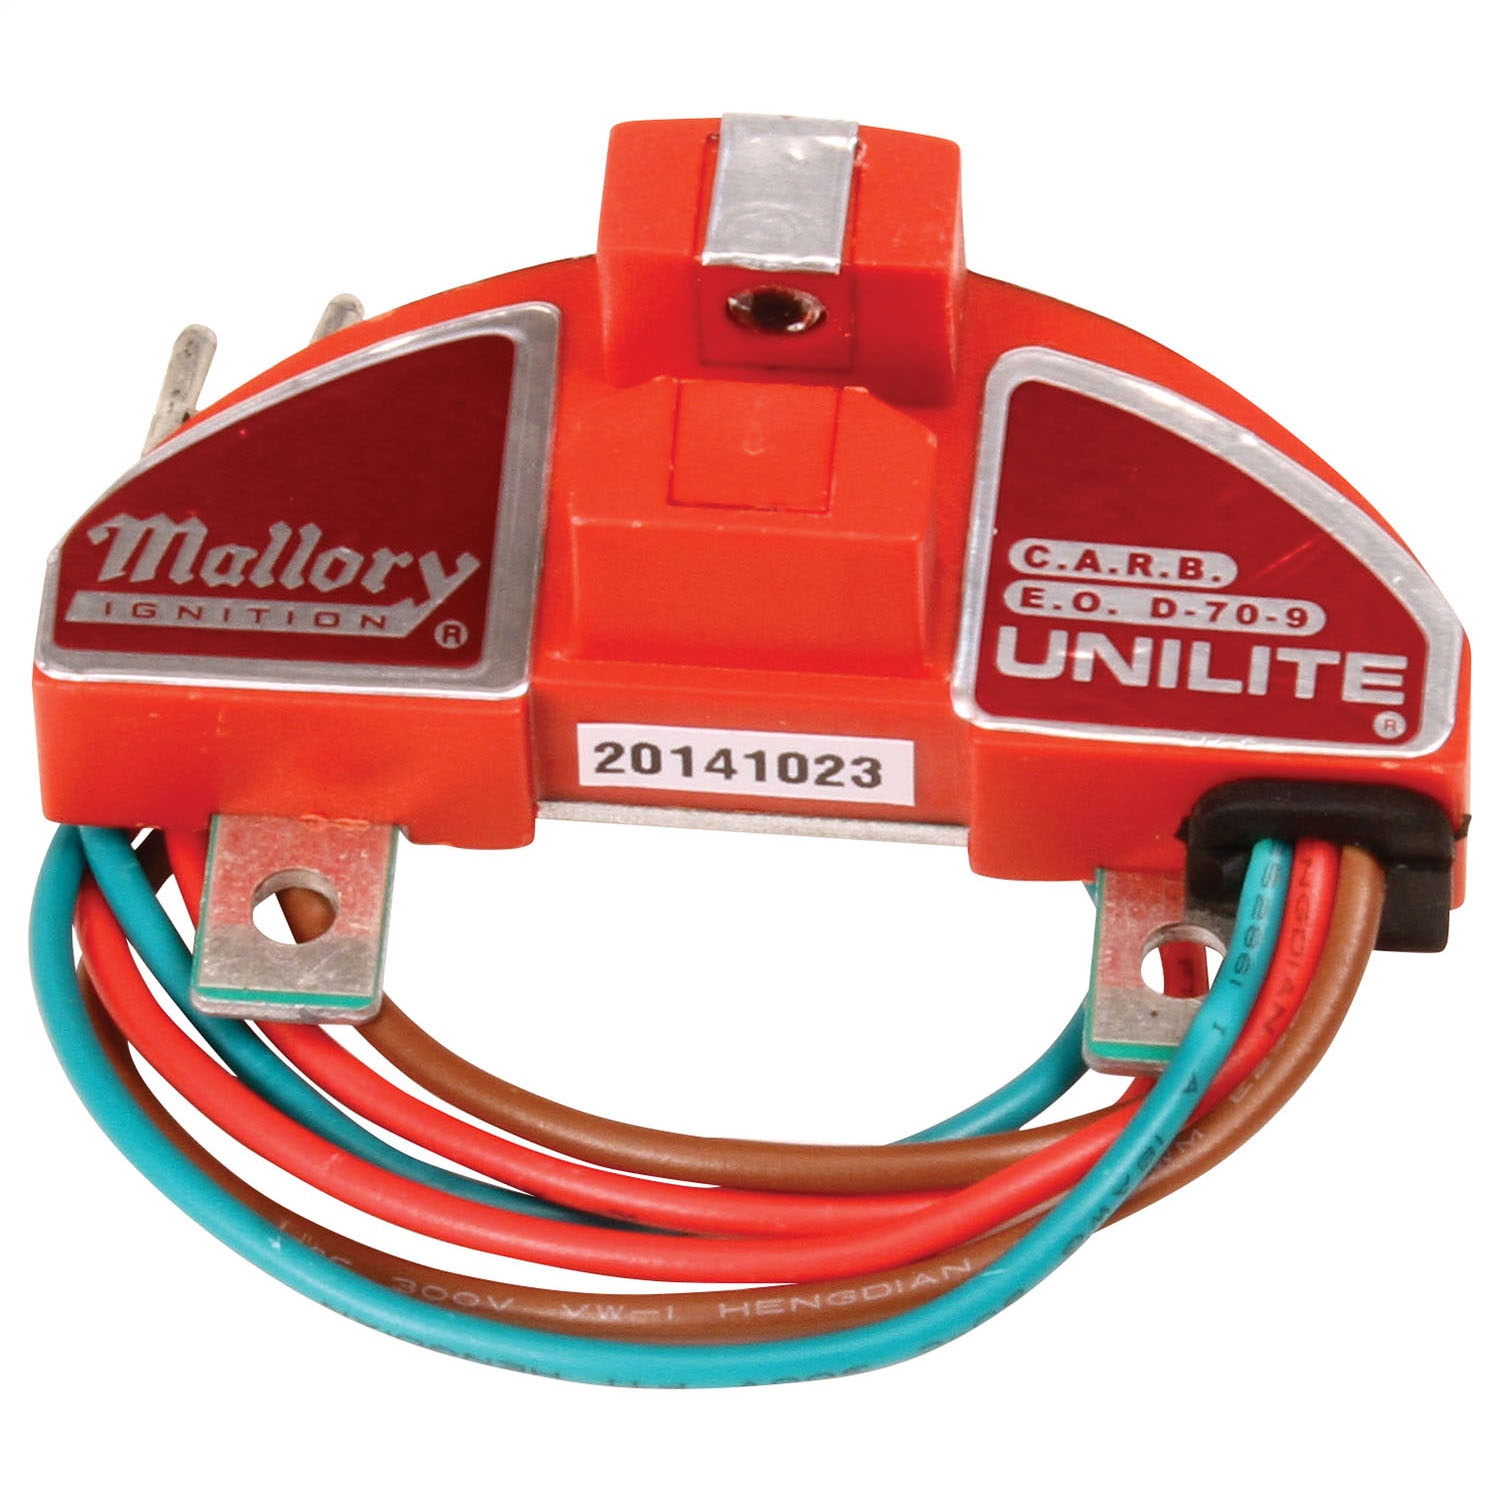 Mallory Mallory 605 Unilite Ignition Module